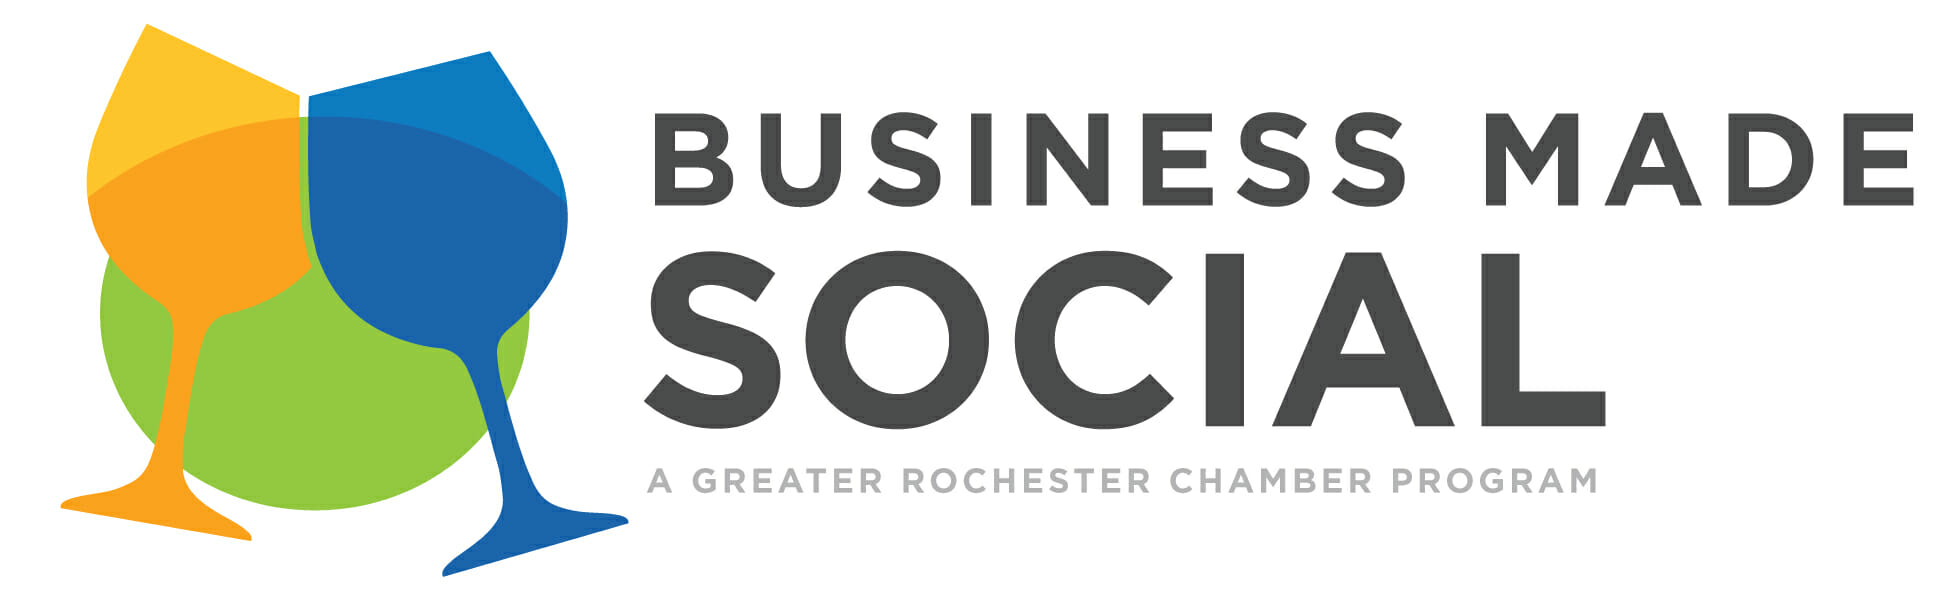 Business Made Social logo